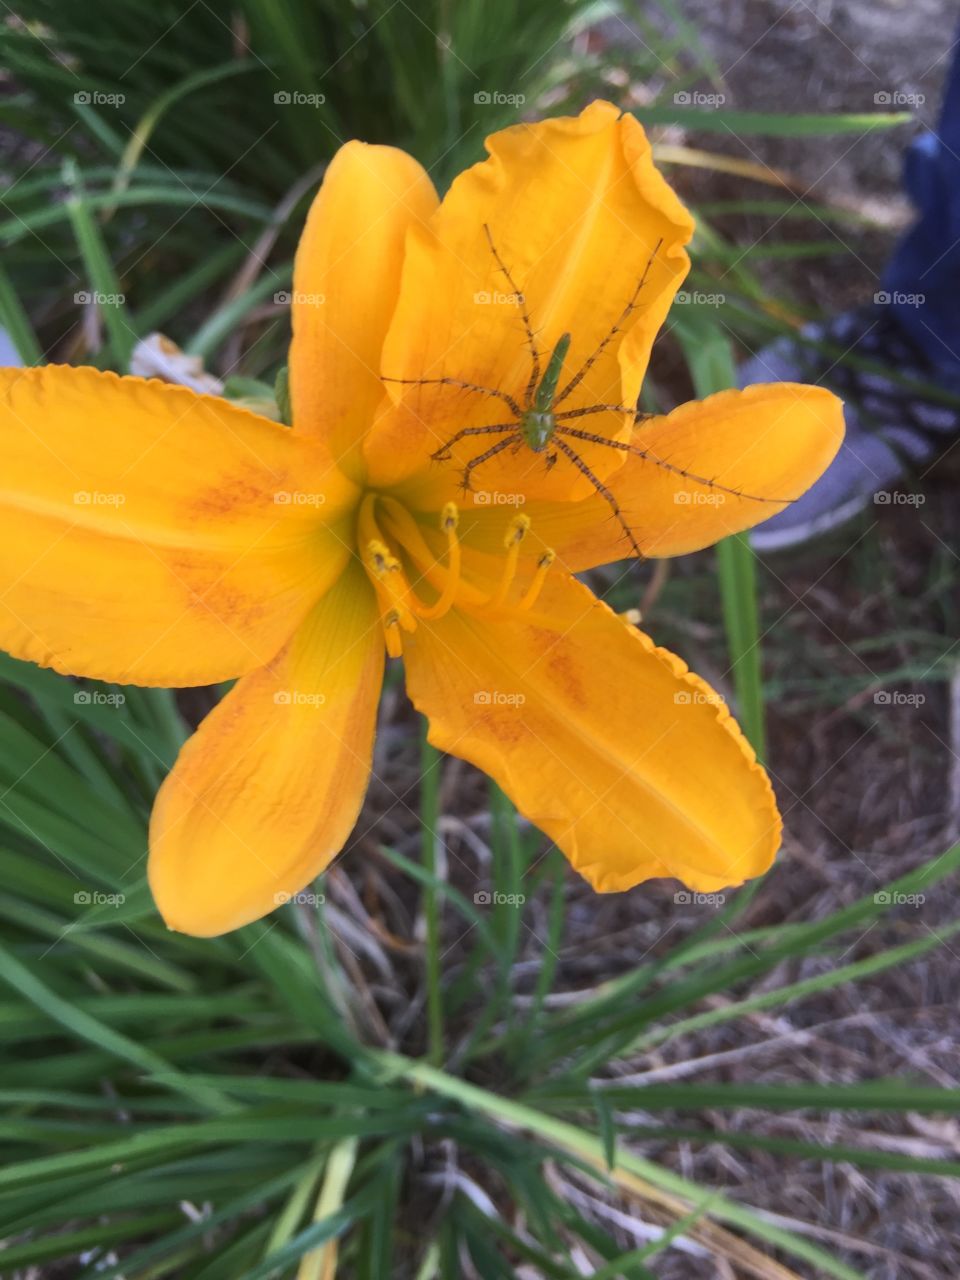 Spider on a flower 